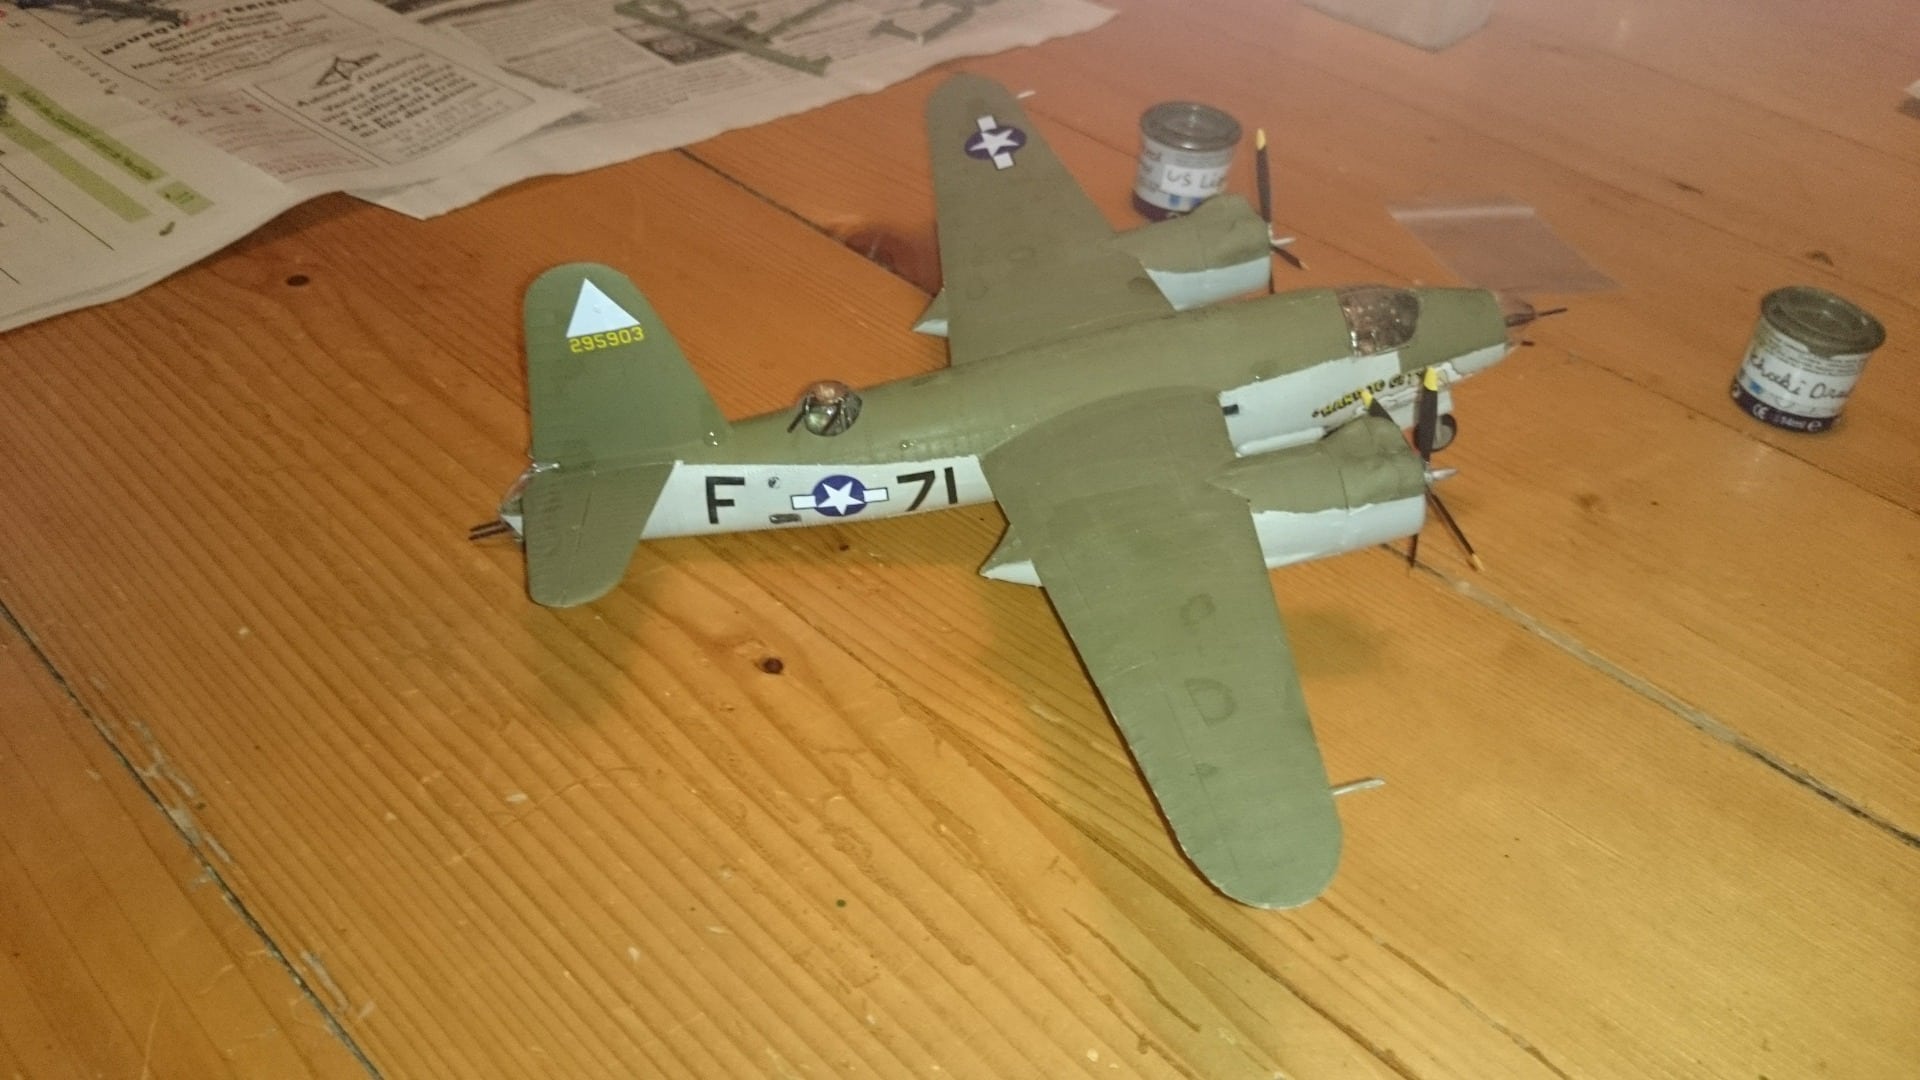 B-26 marauder revell(1/72) 1k0